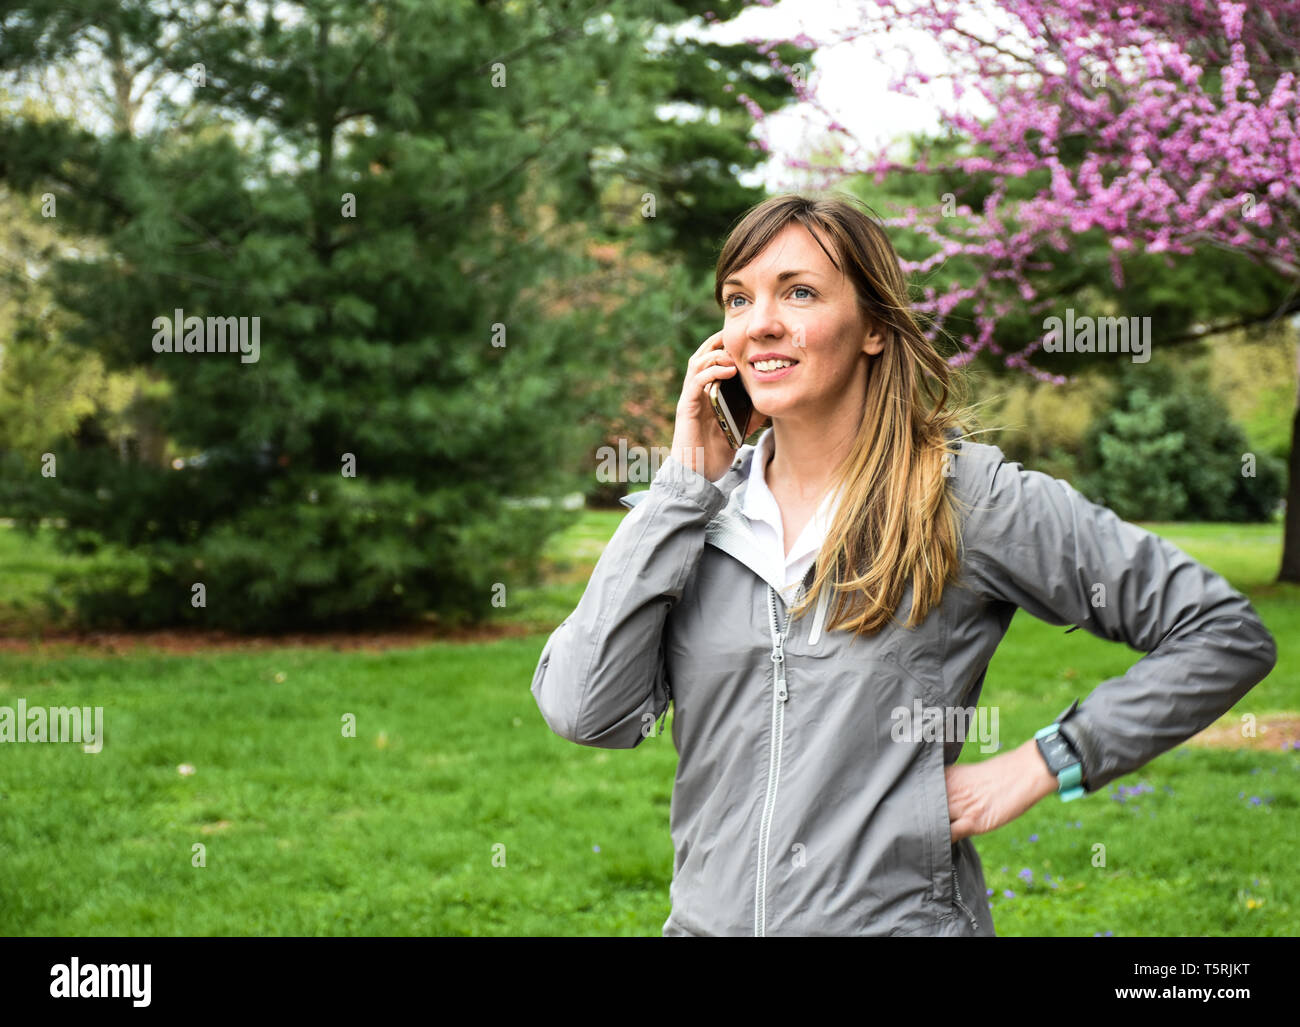 Attraktive, lächelnden jungen Frau, die sich in der Zelle Handy, die Hände auf den Hüften, im Stadtpark, rosa Baum Hintergrund, grünes Gras, bewölkten Tag - Bild Stockfoto